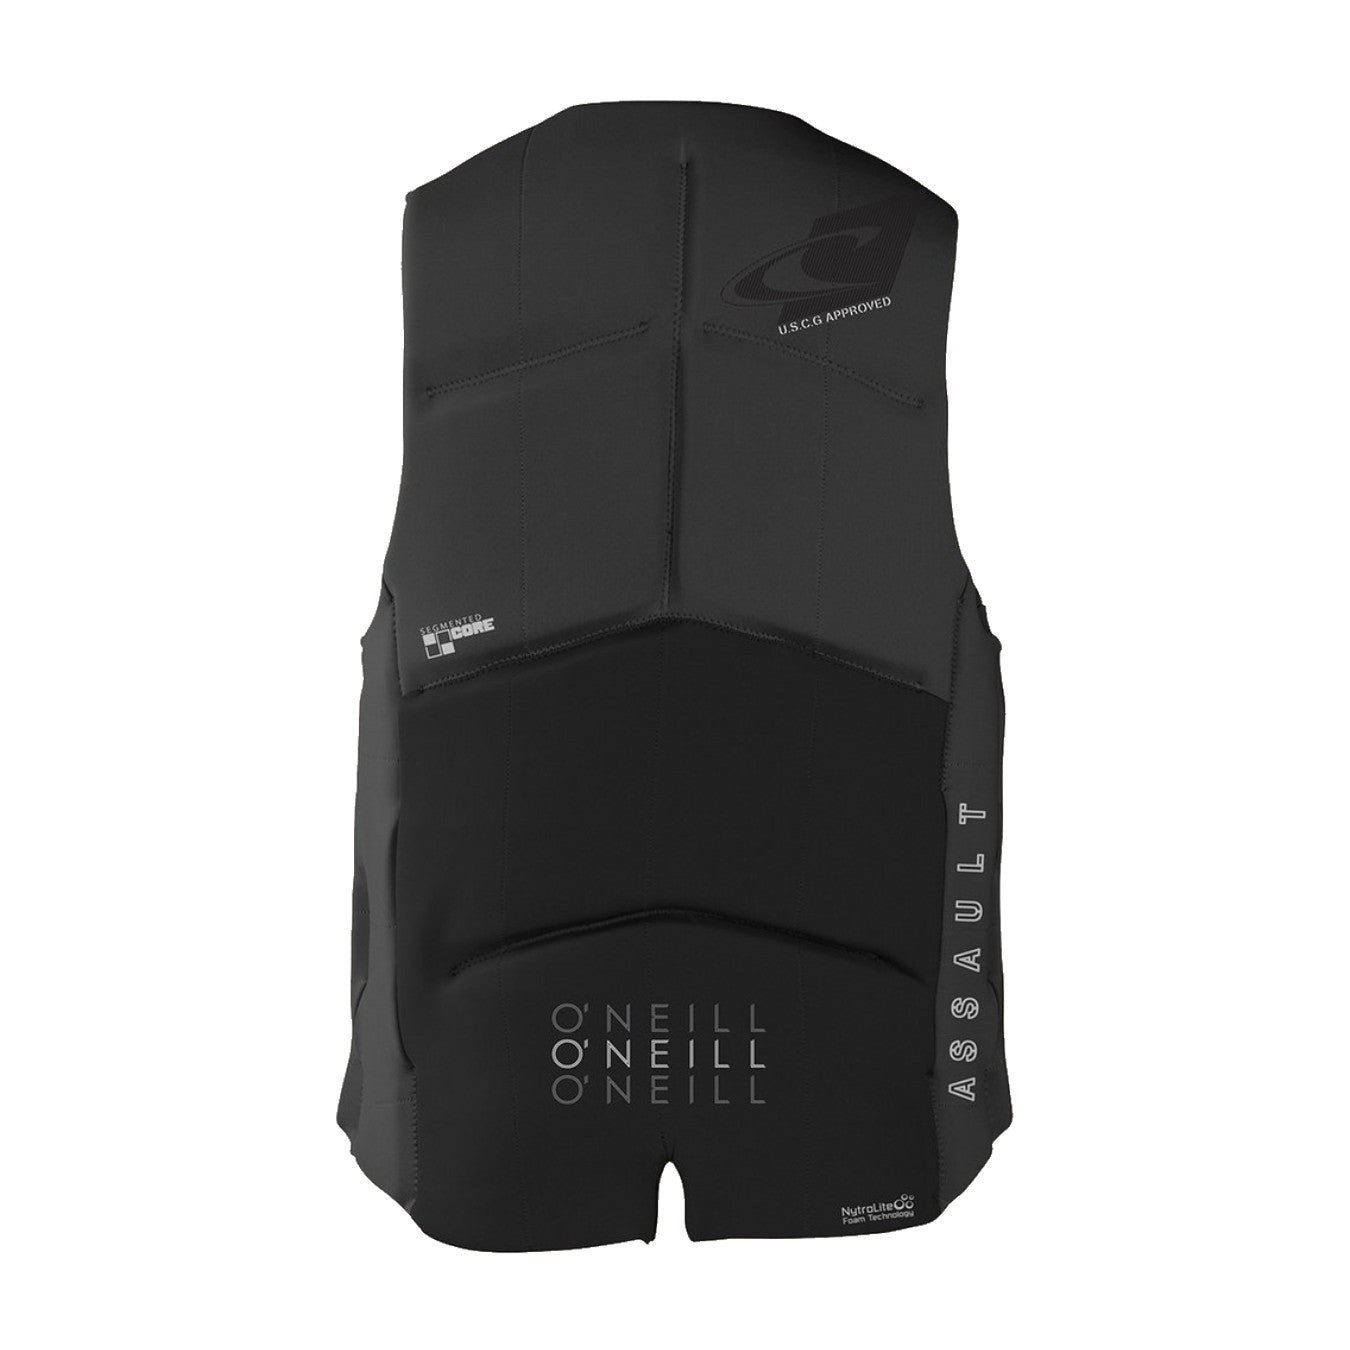 O'Neill Assault Life Vest - 88 Gear